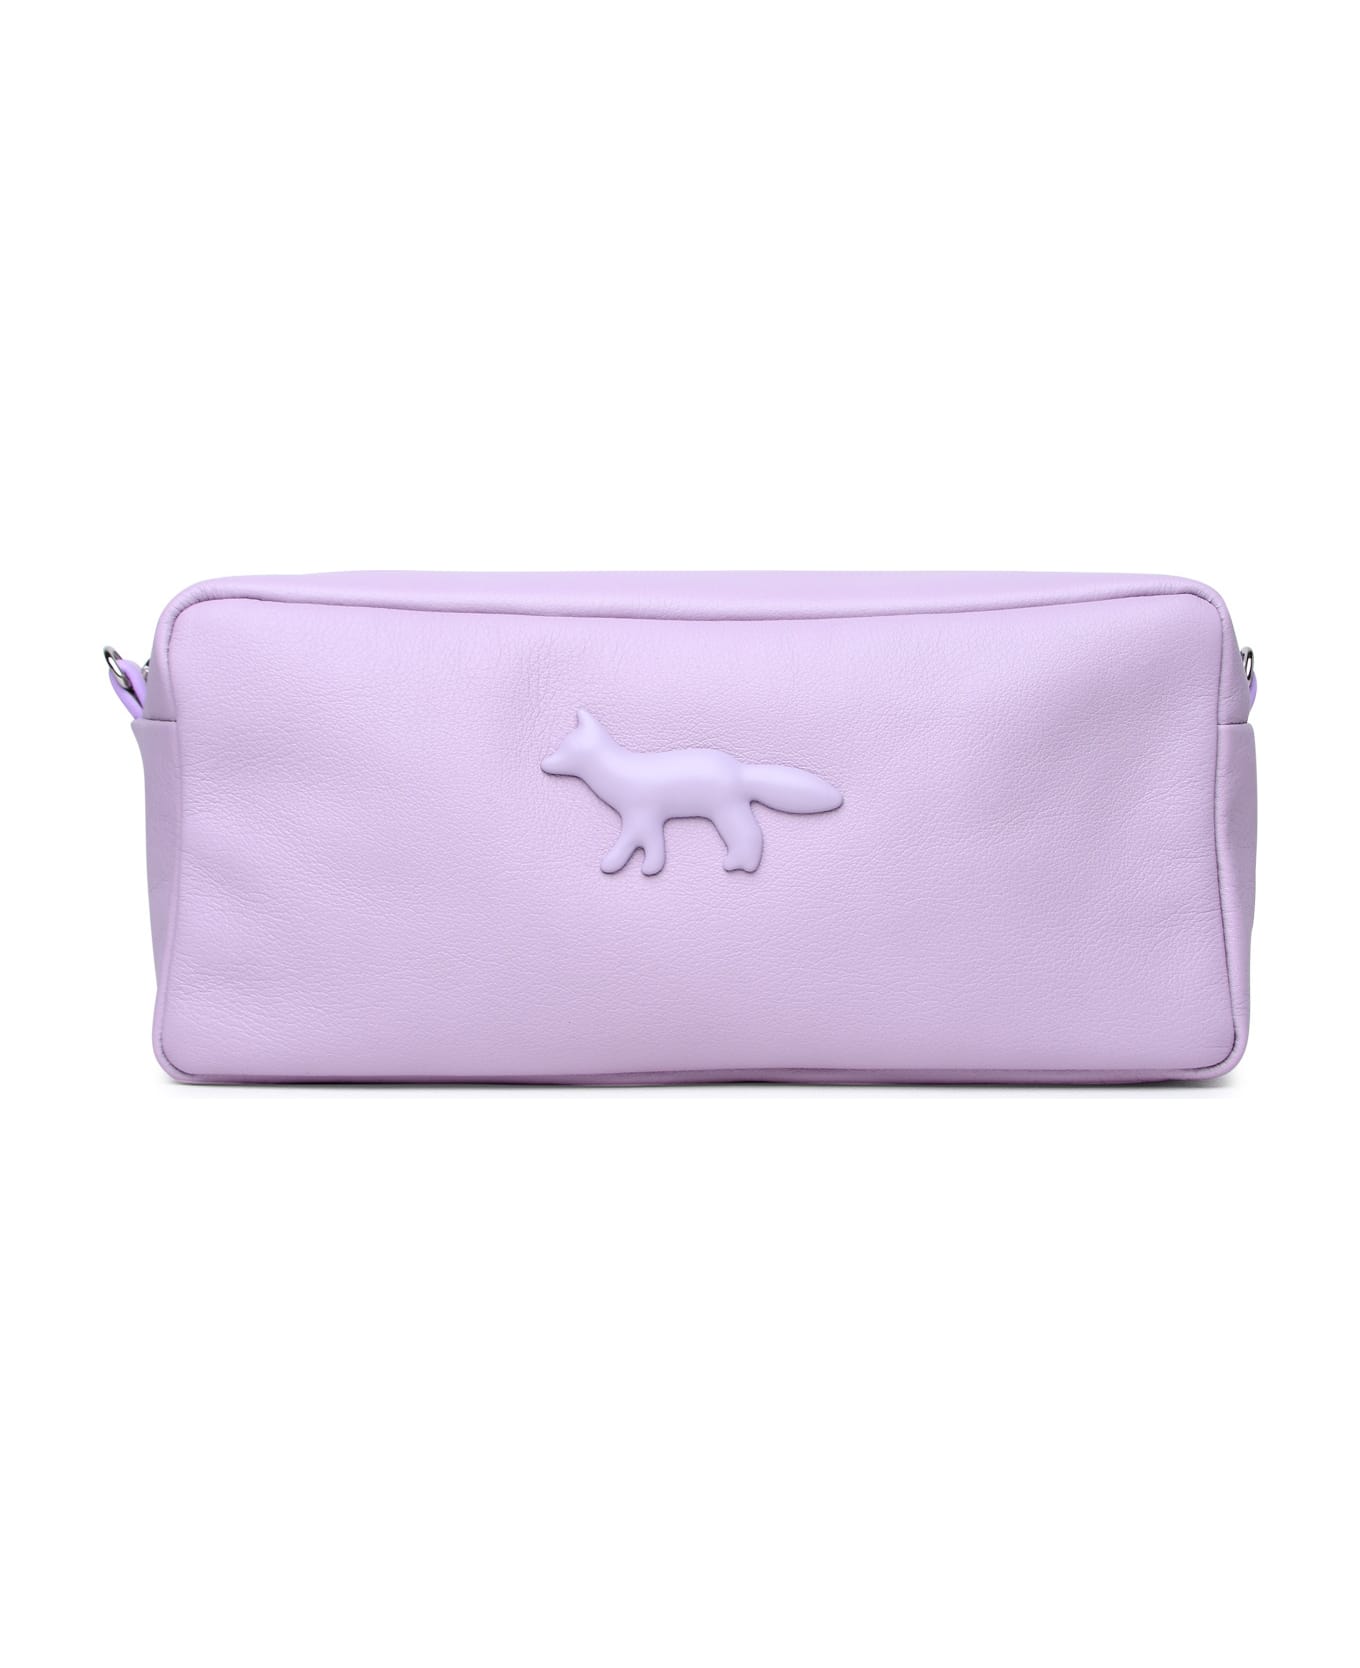 Maison Kitsuné 'cloud' Lilac Leather Bag - Liliac